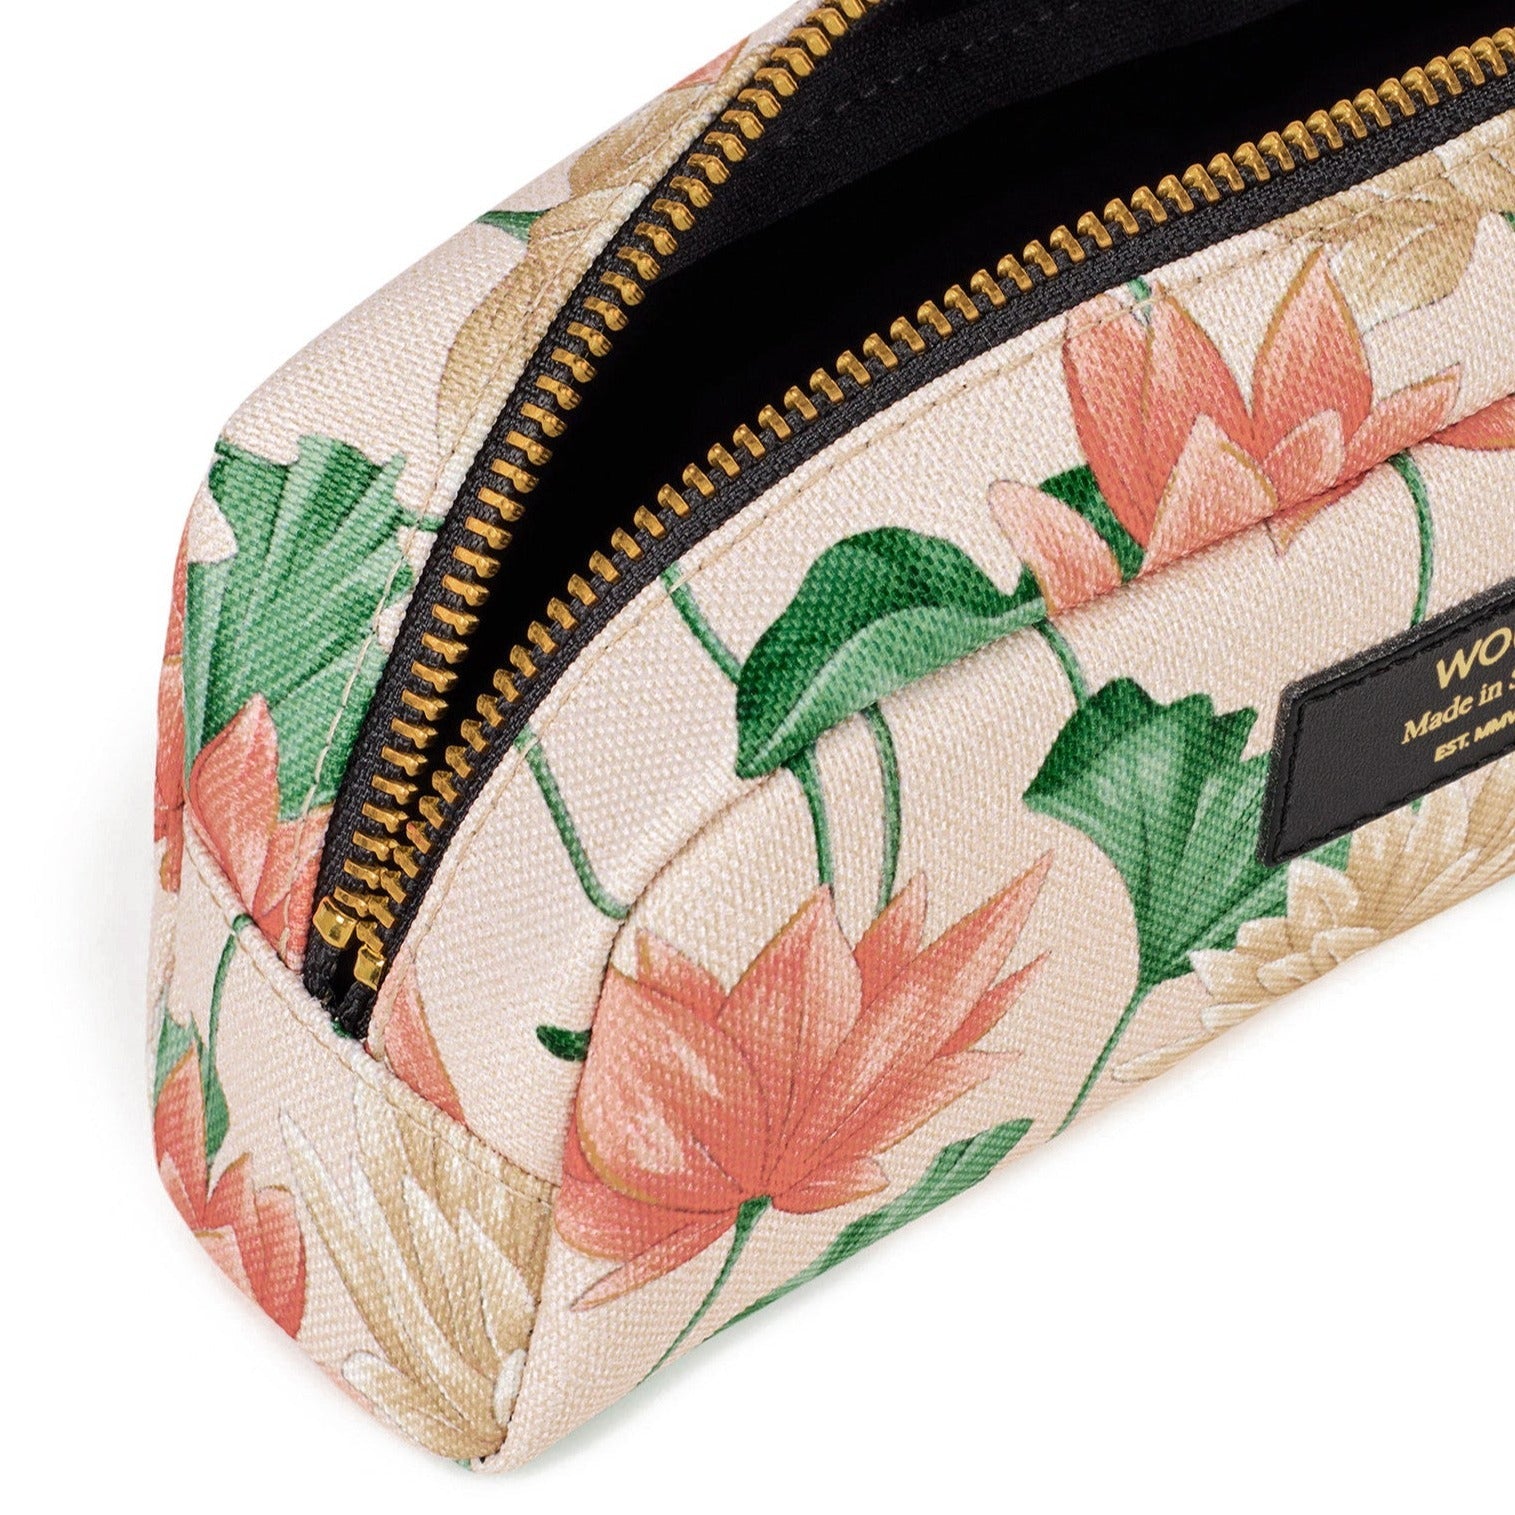 Small makeup bag "Lotus" - Cuppin's